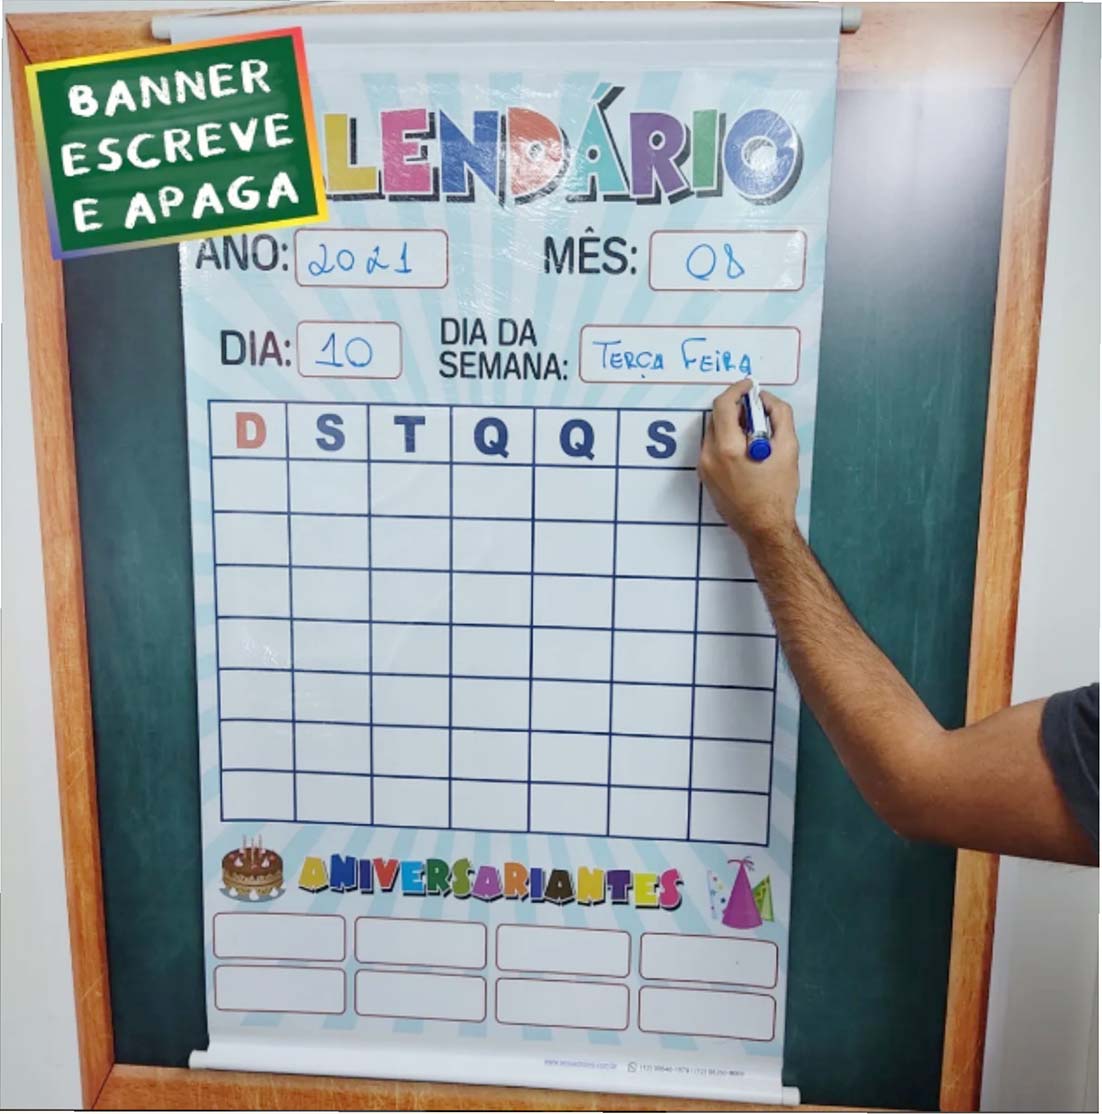 Banner Calendário escreve e apaga especial com laminação